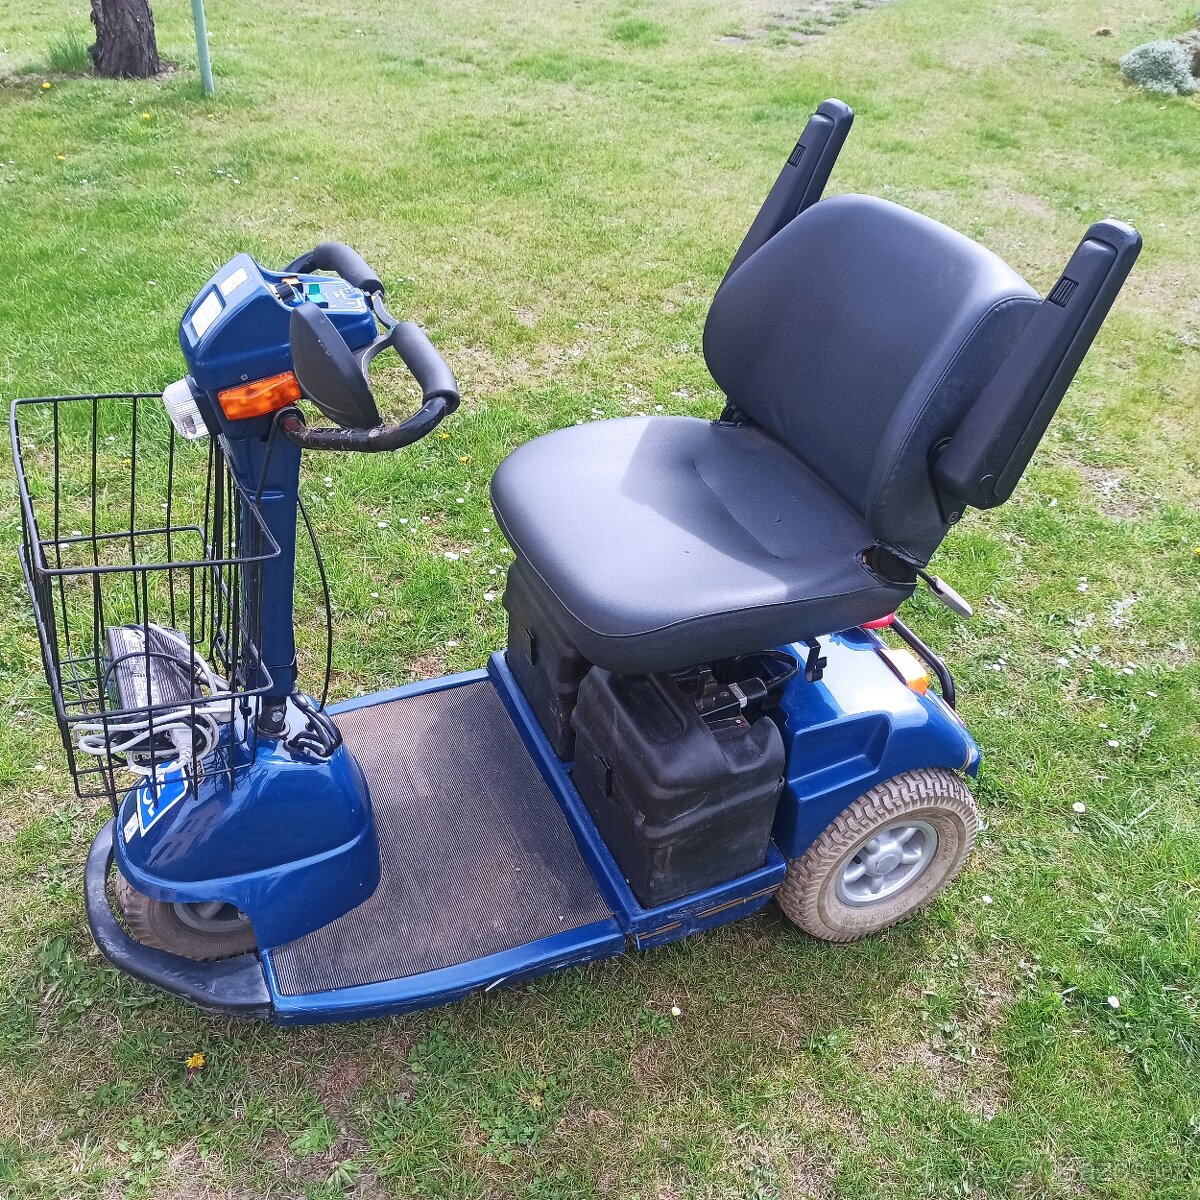 Elektricky invalidni voziík